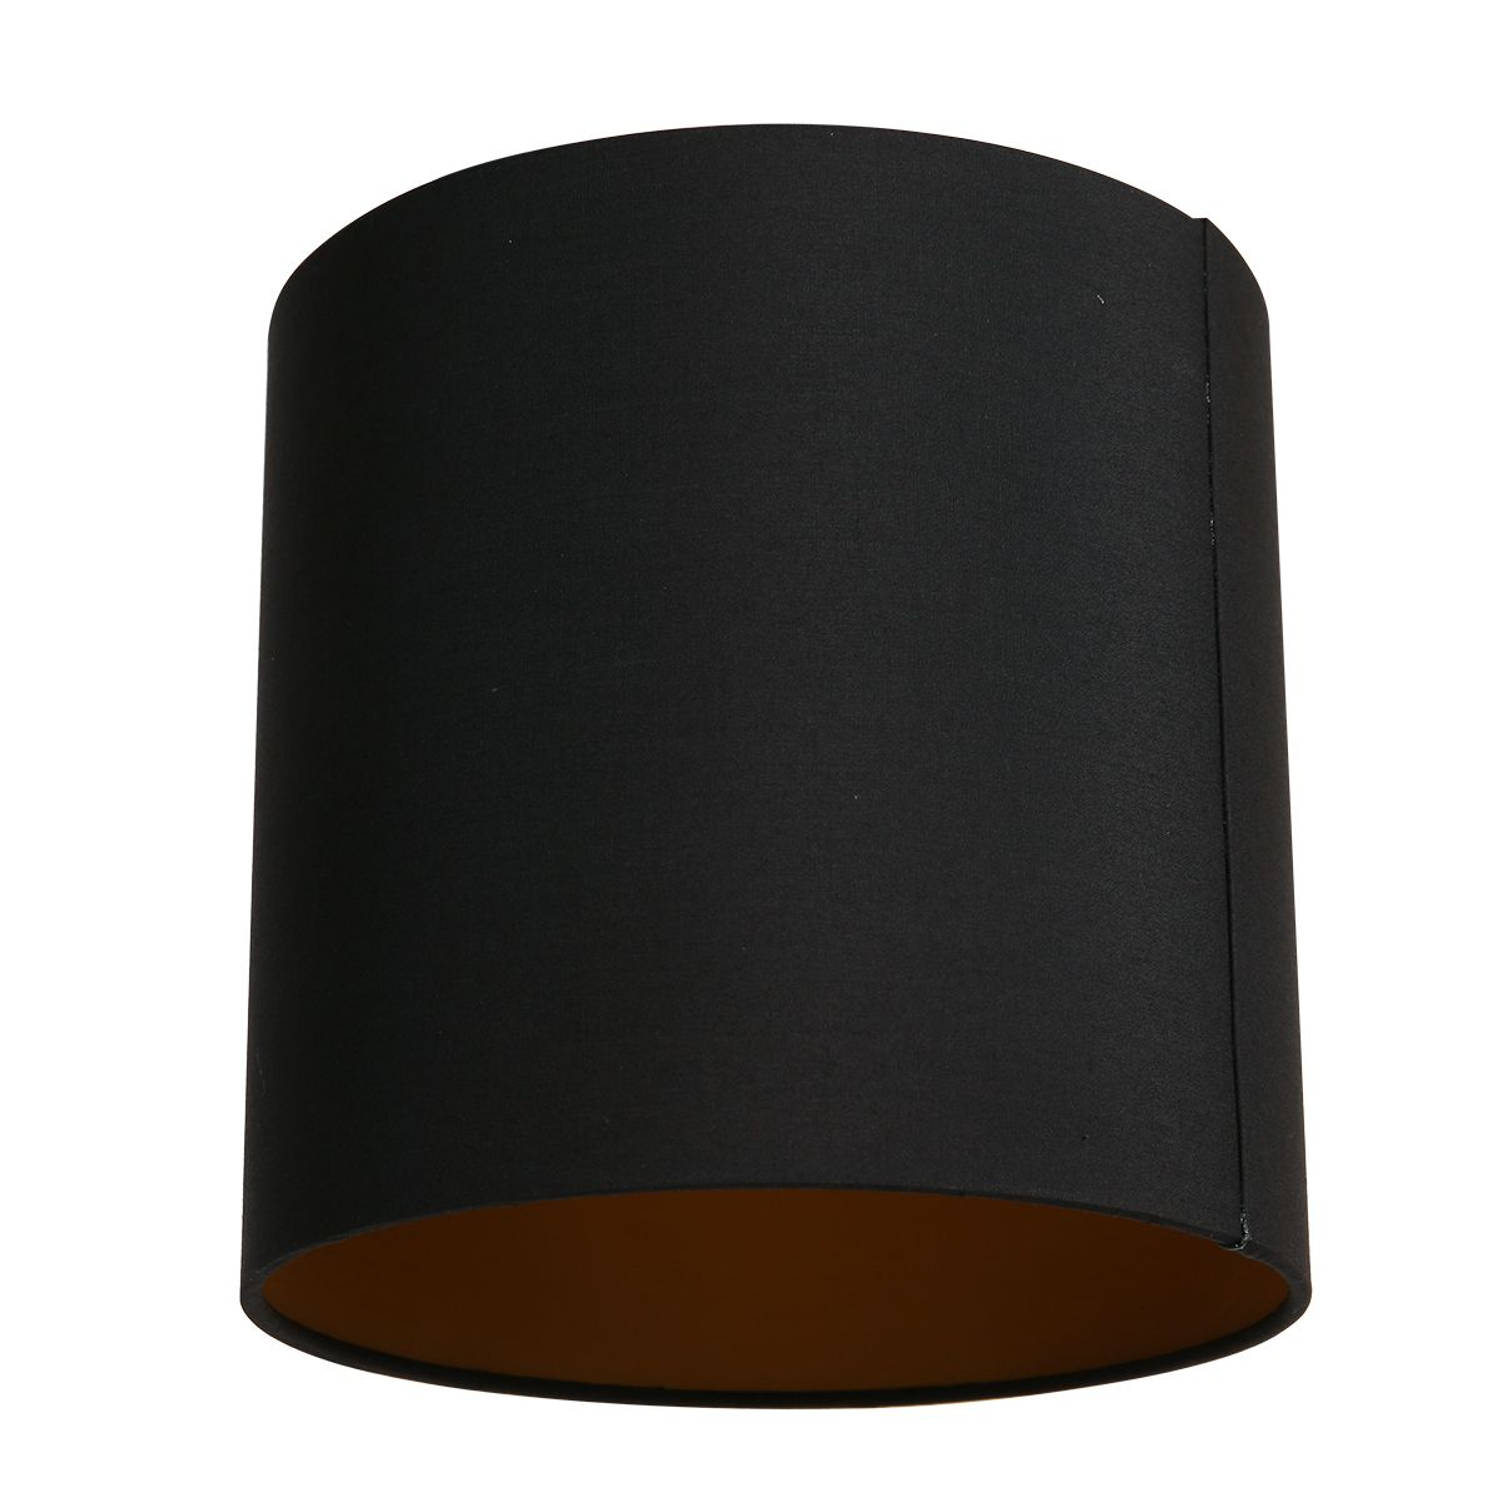 Mexlite Lampenkappen lampenkappen - ø 20 cm - E27 (grote fitting) - zwart